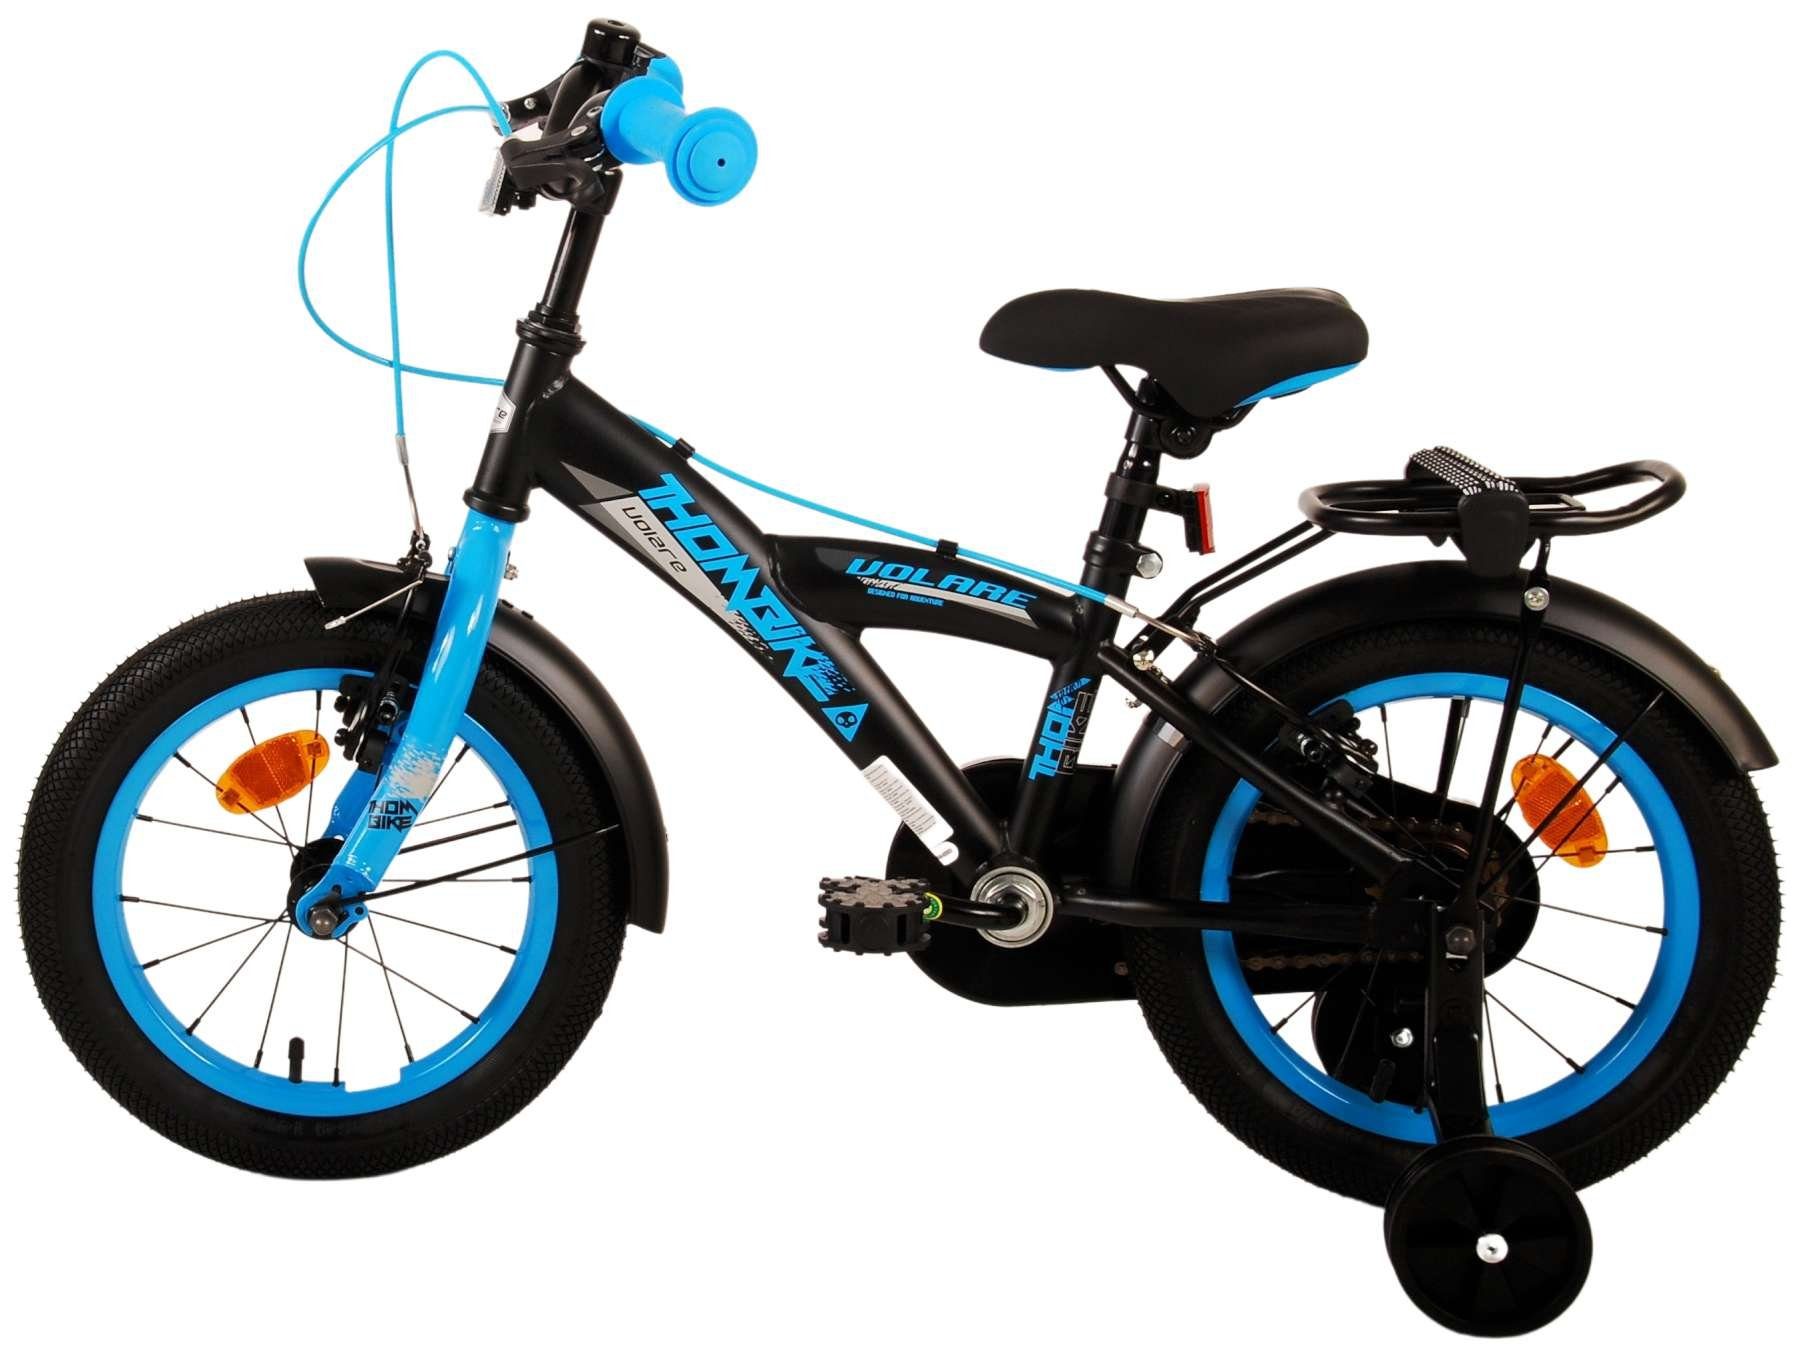 Blau - ohne - - Zoll Stützräder mit Kinderrad Schaltung TPFSports Sicherheitsgriffe), Zoll Thombike Fahrrad Jungen Jungs Gang, Kinder 1 (Jungsfahrrad 2x Fahrrad - Volare - mit Kinderfahrrad Handbremse, 14 14